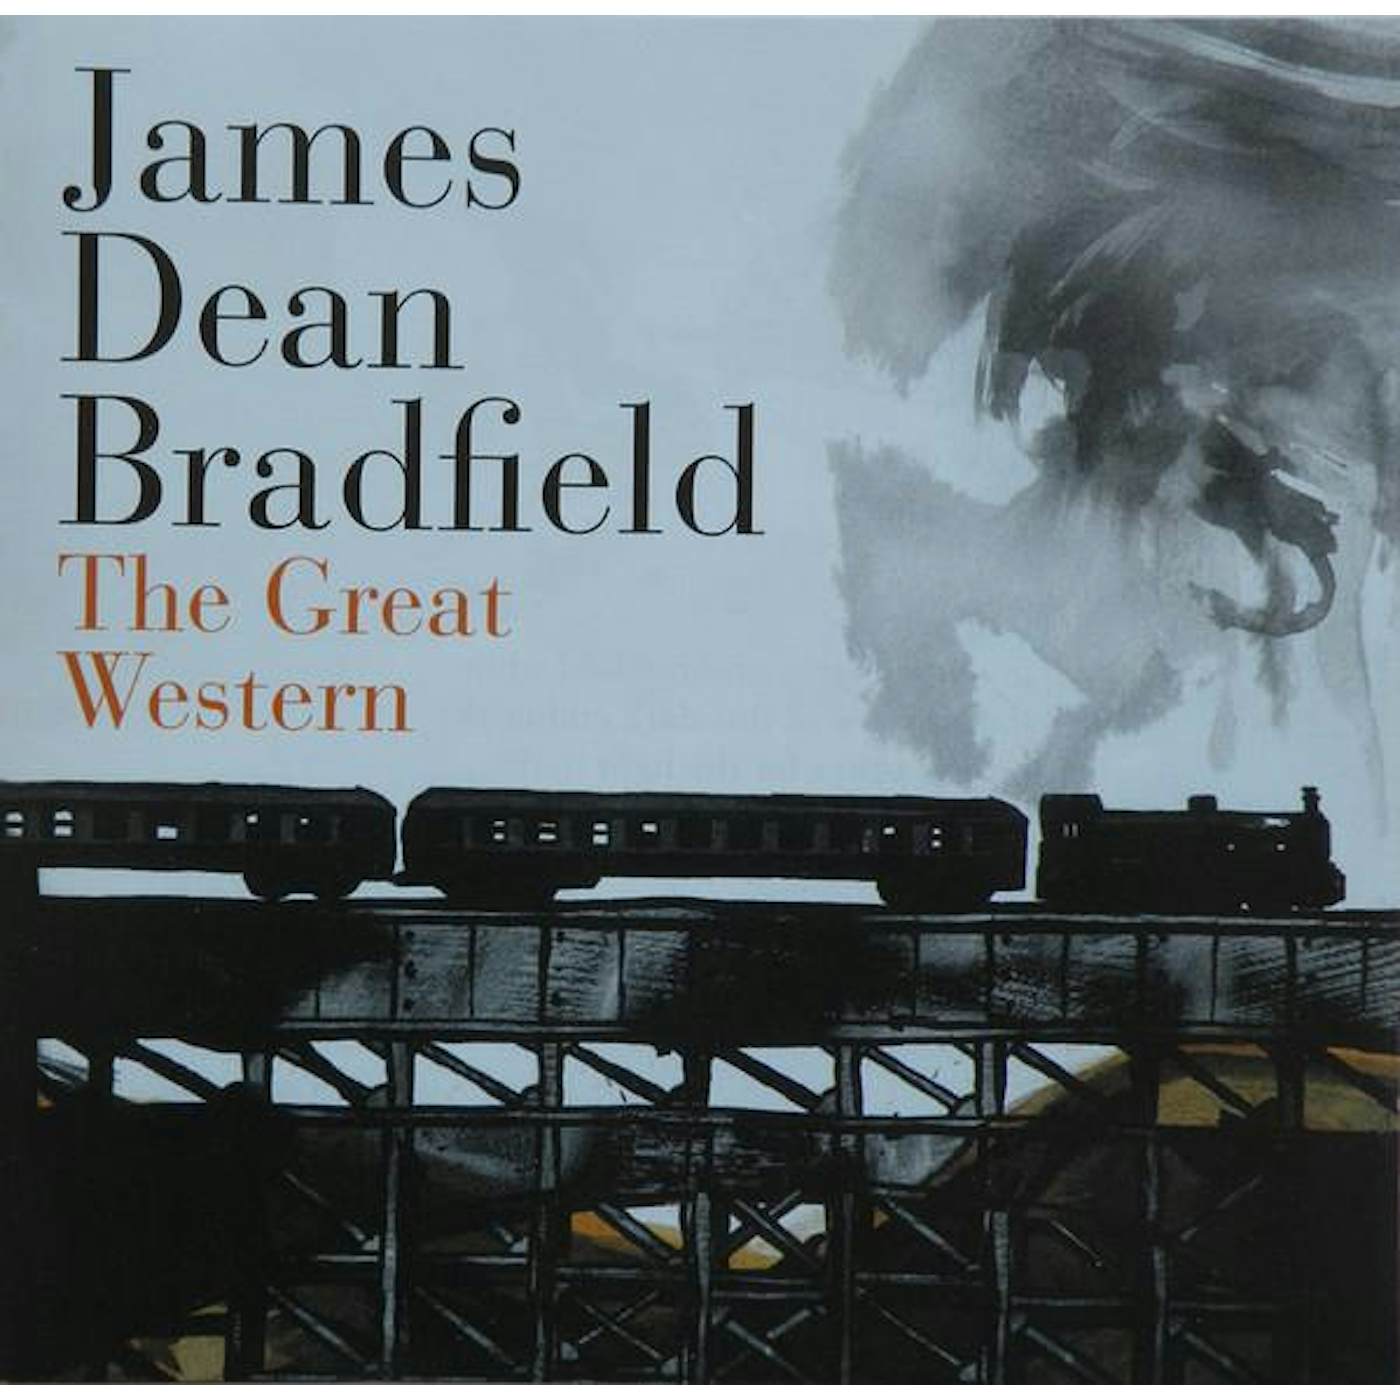 James Dean Bradfield GREAT WESTERN (24BIT REMASTER) CD